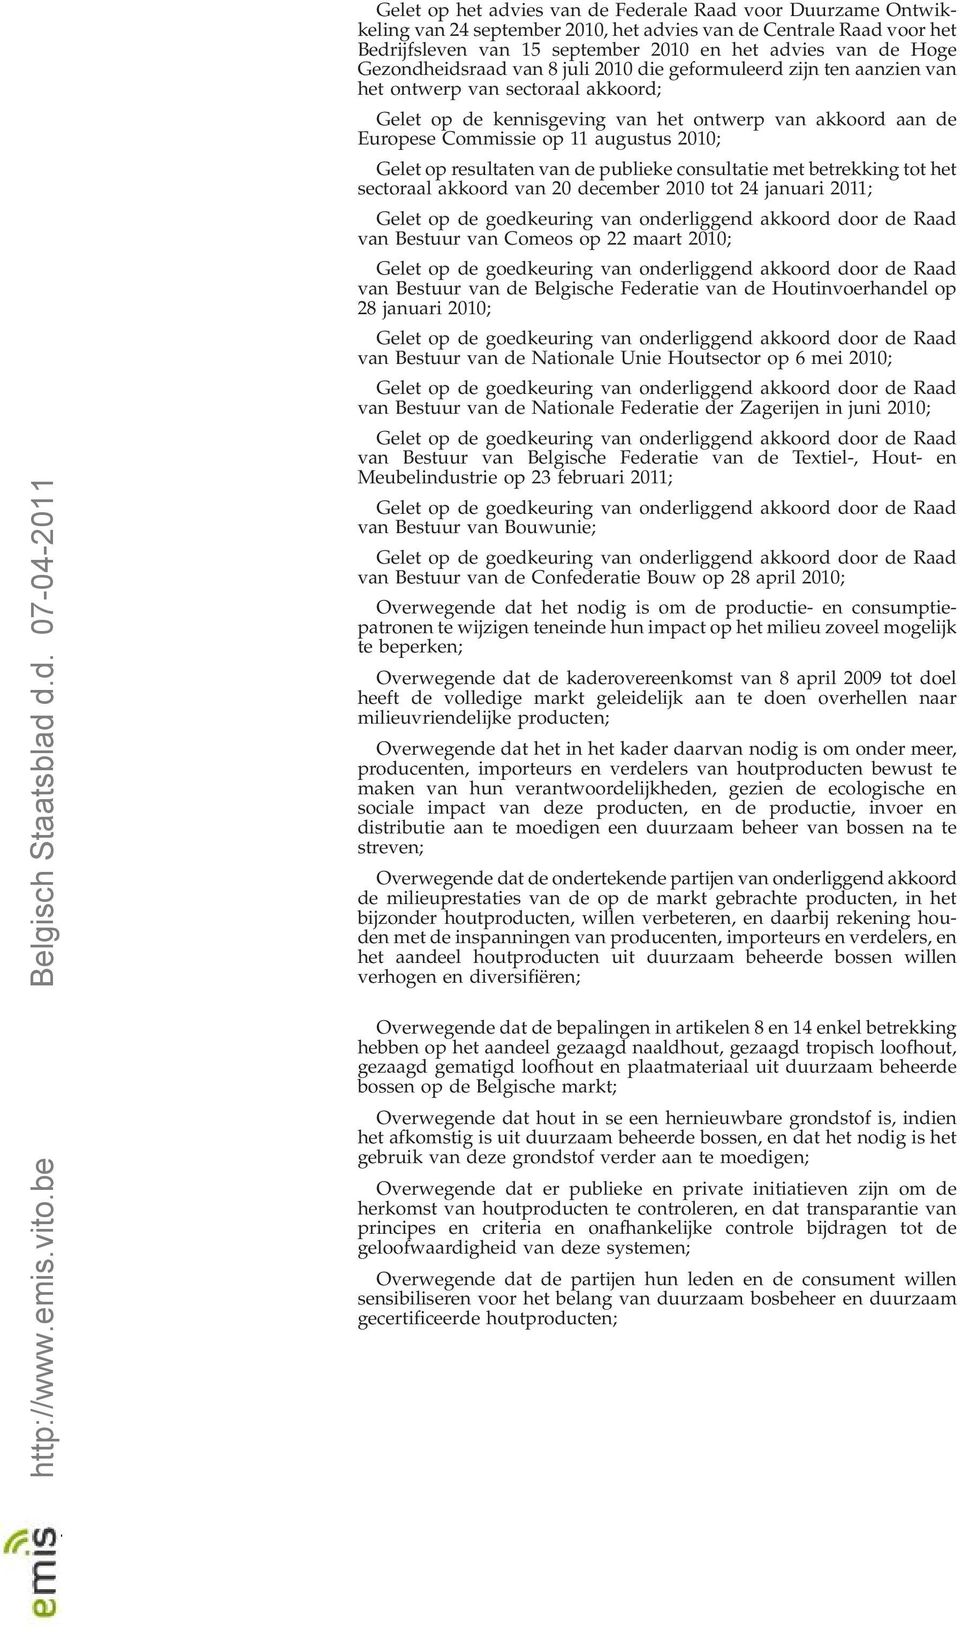 2010; Gelet op resultaten van de publieke consultatie met betrekking tot het sectoraal akkoord van 20 december 2010 tot 24 januari 2011; van Bestuur van Comeos op 22 maart 2010; van Bestuur van de